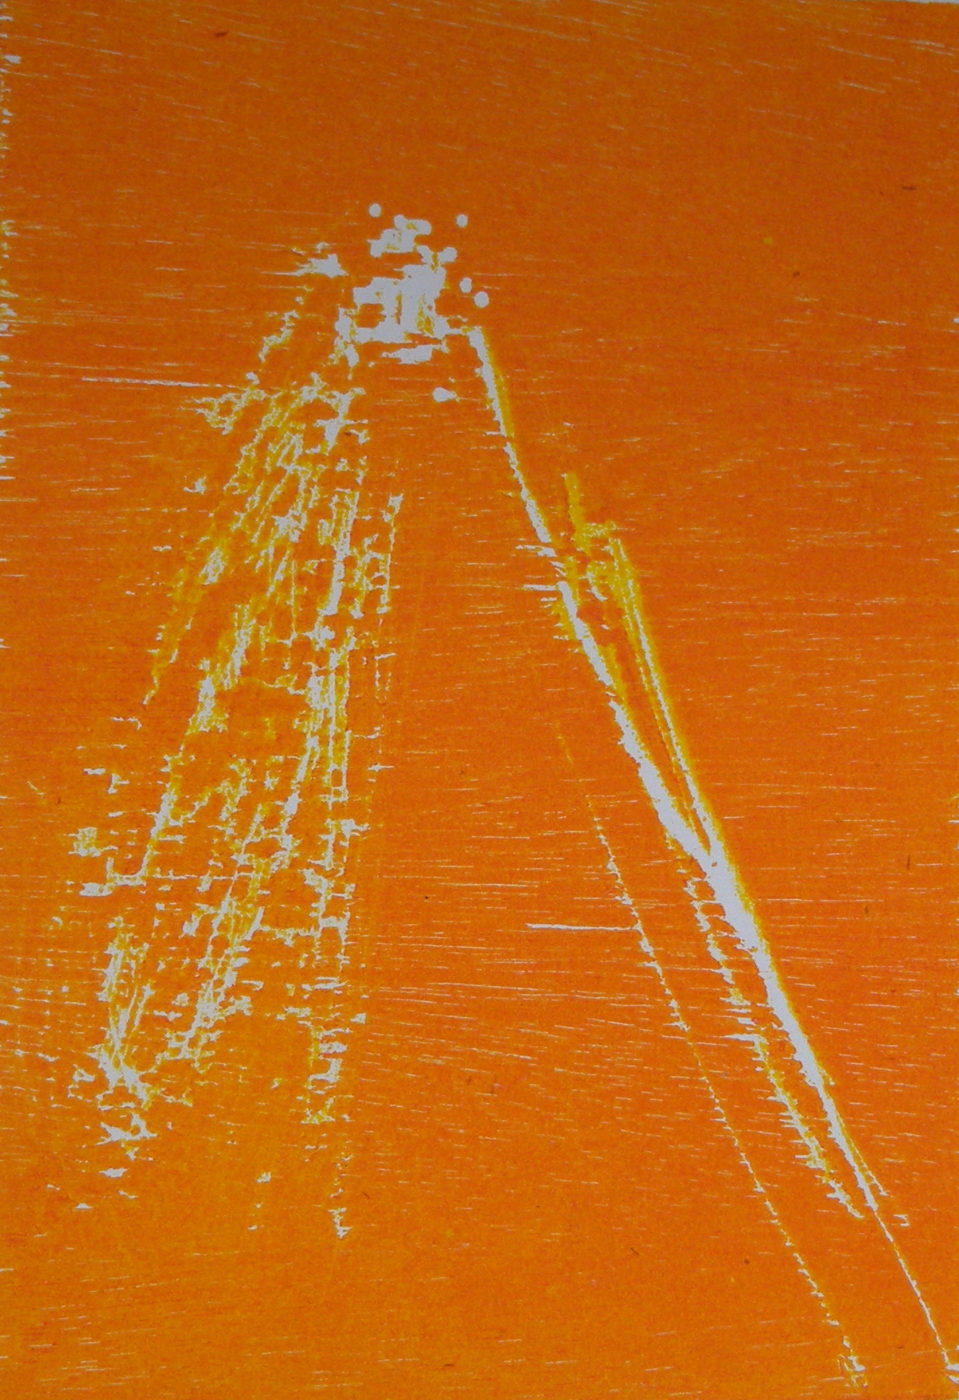 MARC FELD 2011 BRÛLURE Gravure sur cuivre encre sur papier 17 x 23 cm (tirage Patrick Vernet)